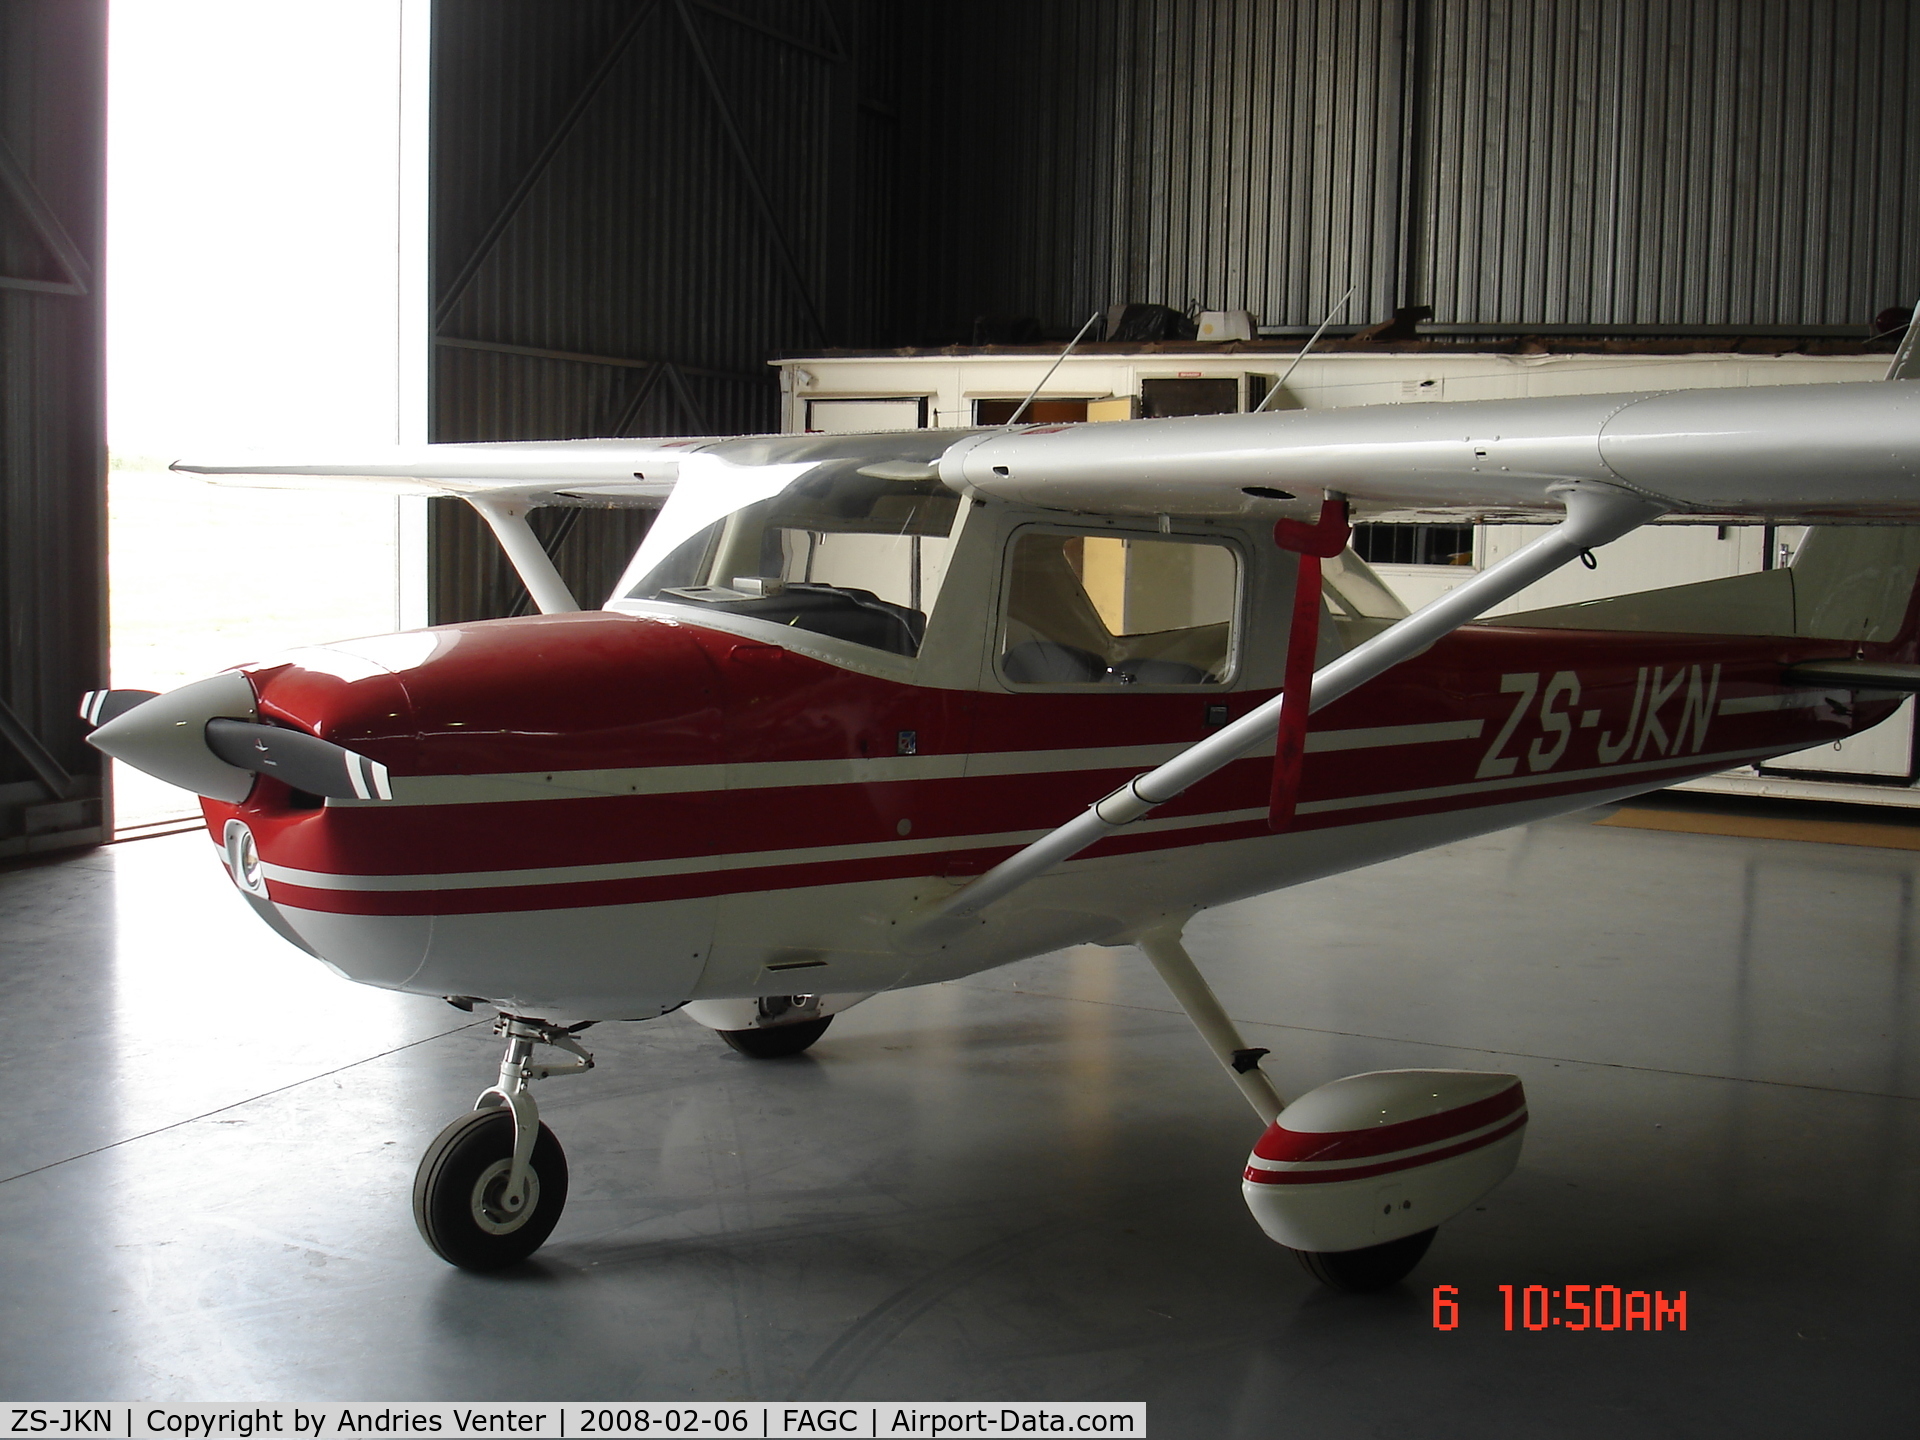 ZS-JKN, 1977 Cessna 150M C/N 15077501, C150M at FAGC